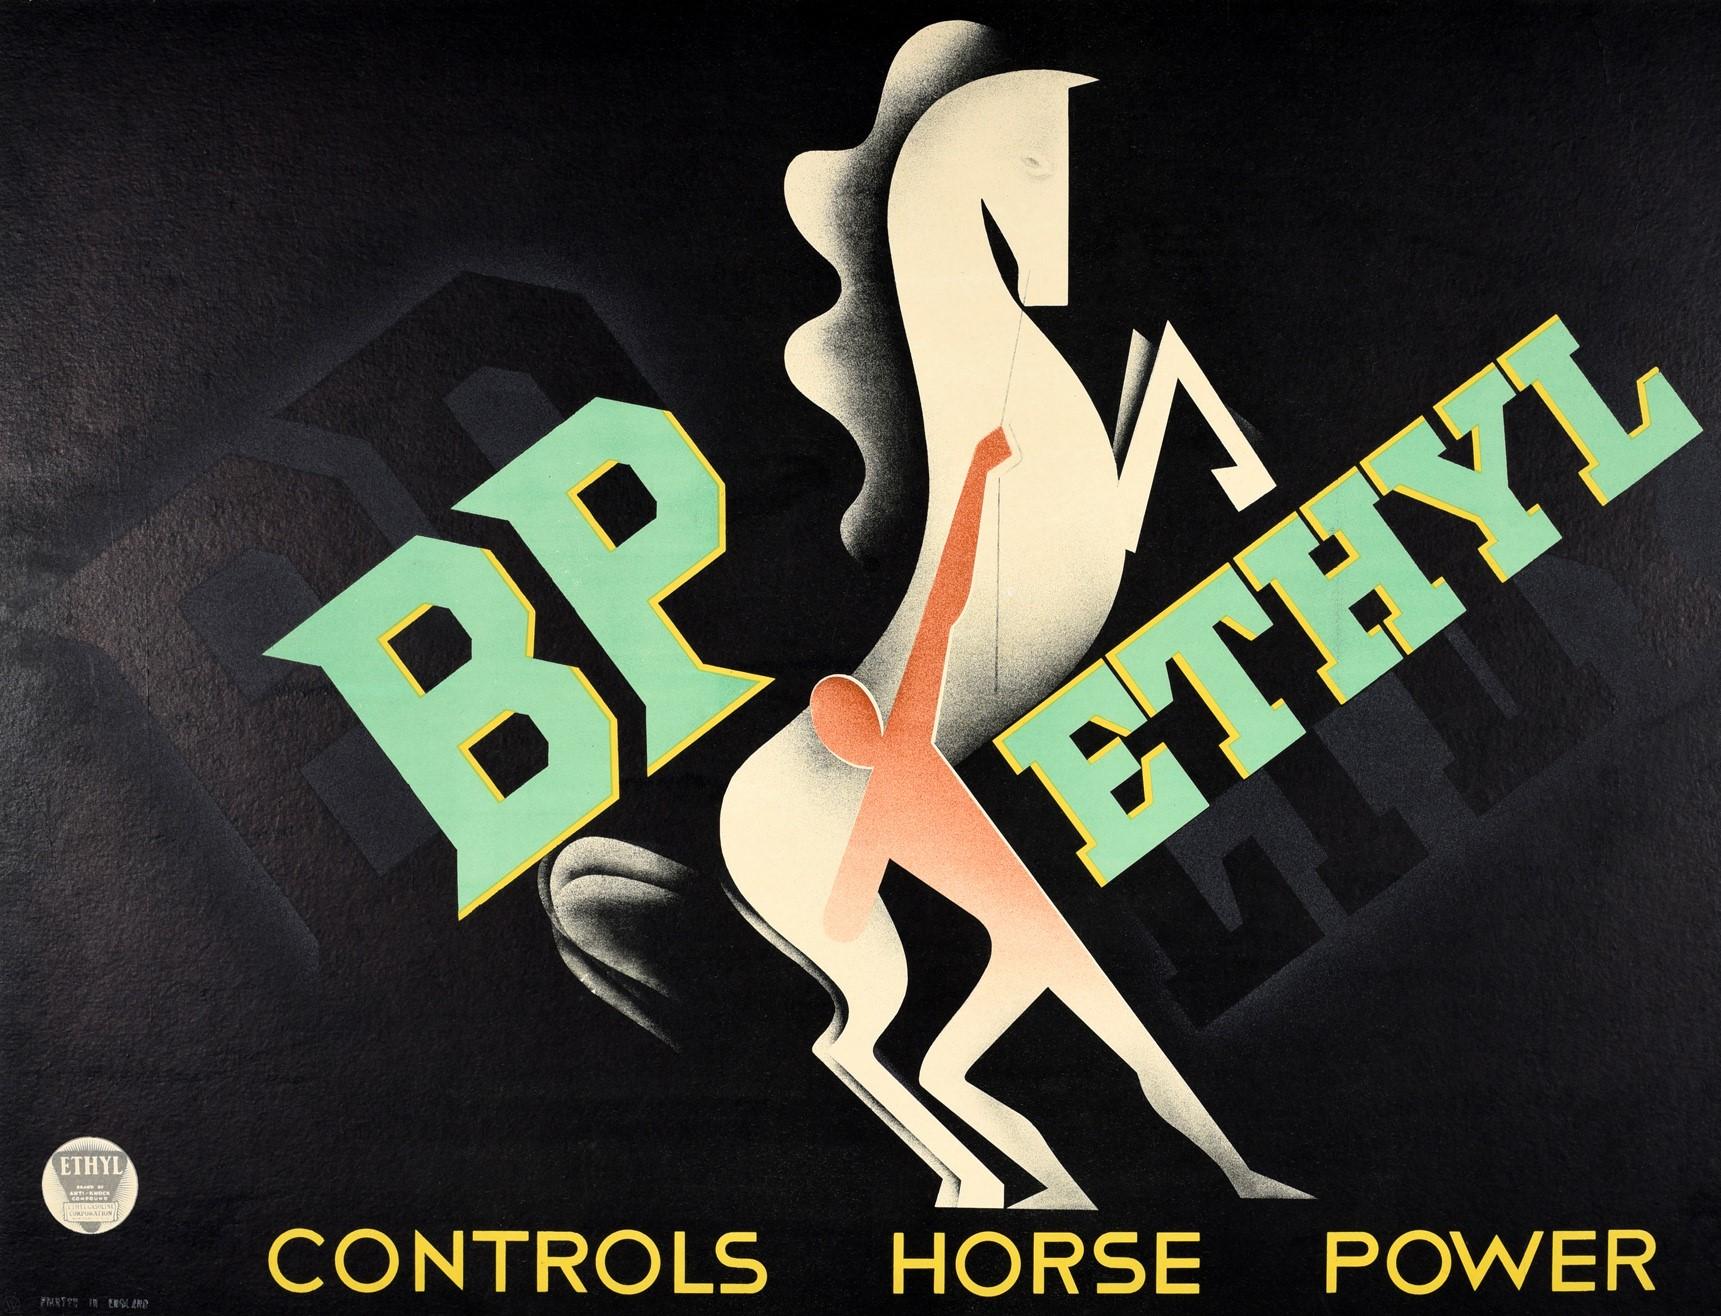 Affiche originale d'époque - BP Ethyl Controls Horse Power - présentant un superbe graphisme moderniste Art Deco de l'artiste italien Paolo Garretto (1903-1989). Image dynamique ombrée à l'aérographe d'un homme retenant et maîtrisant la force d'un